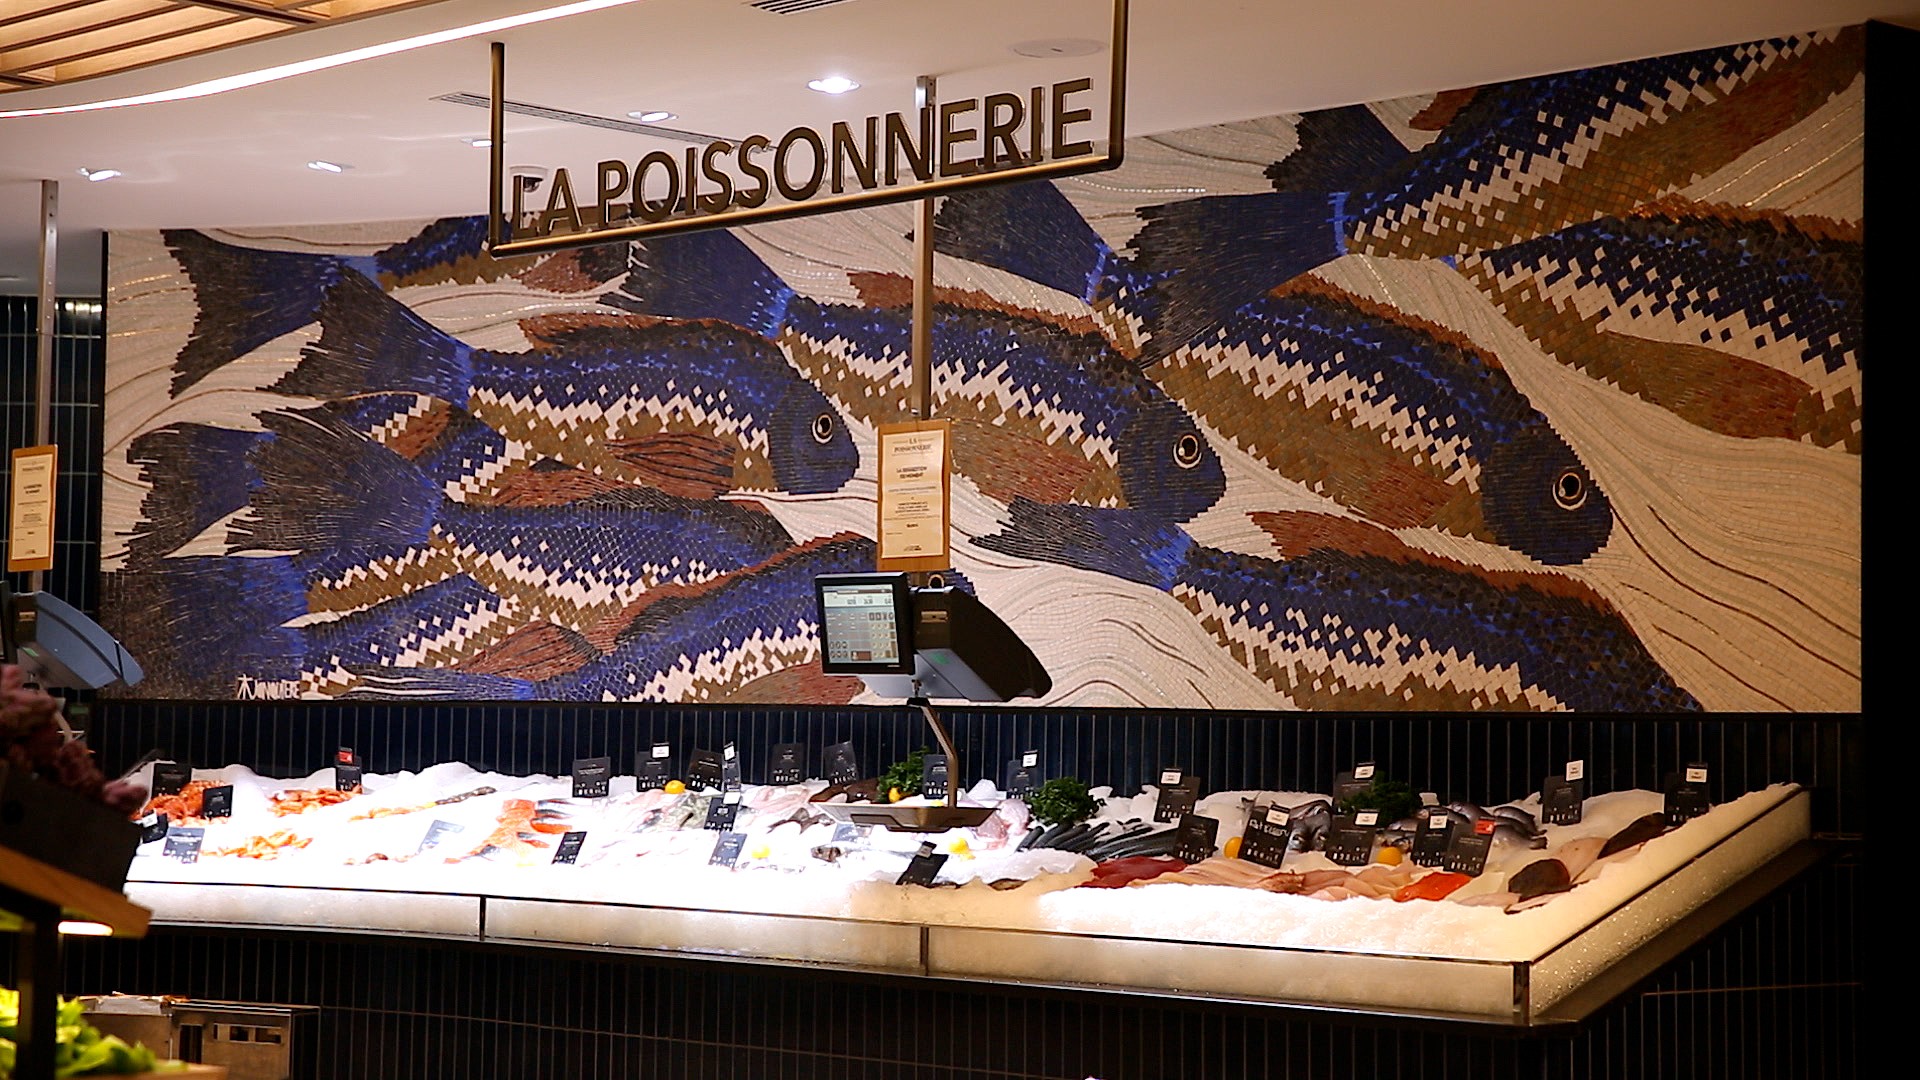 El Ganso - La cinquième boutique El Ganso à Paris a ouvert ses portes dans  le centre commercial BHV/Marais de Galeries Lafayette au 36 rue de la  Verrerie de Paris! Nous vous